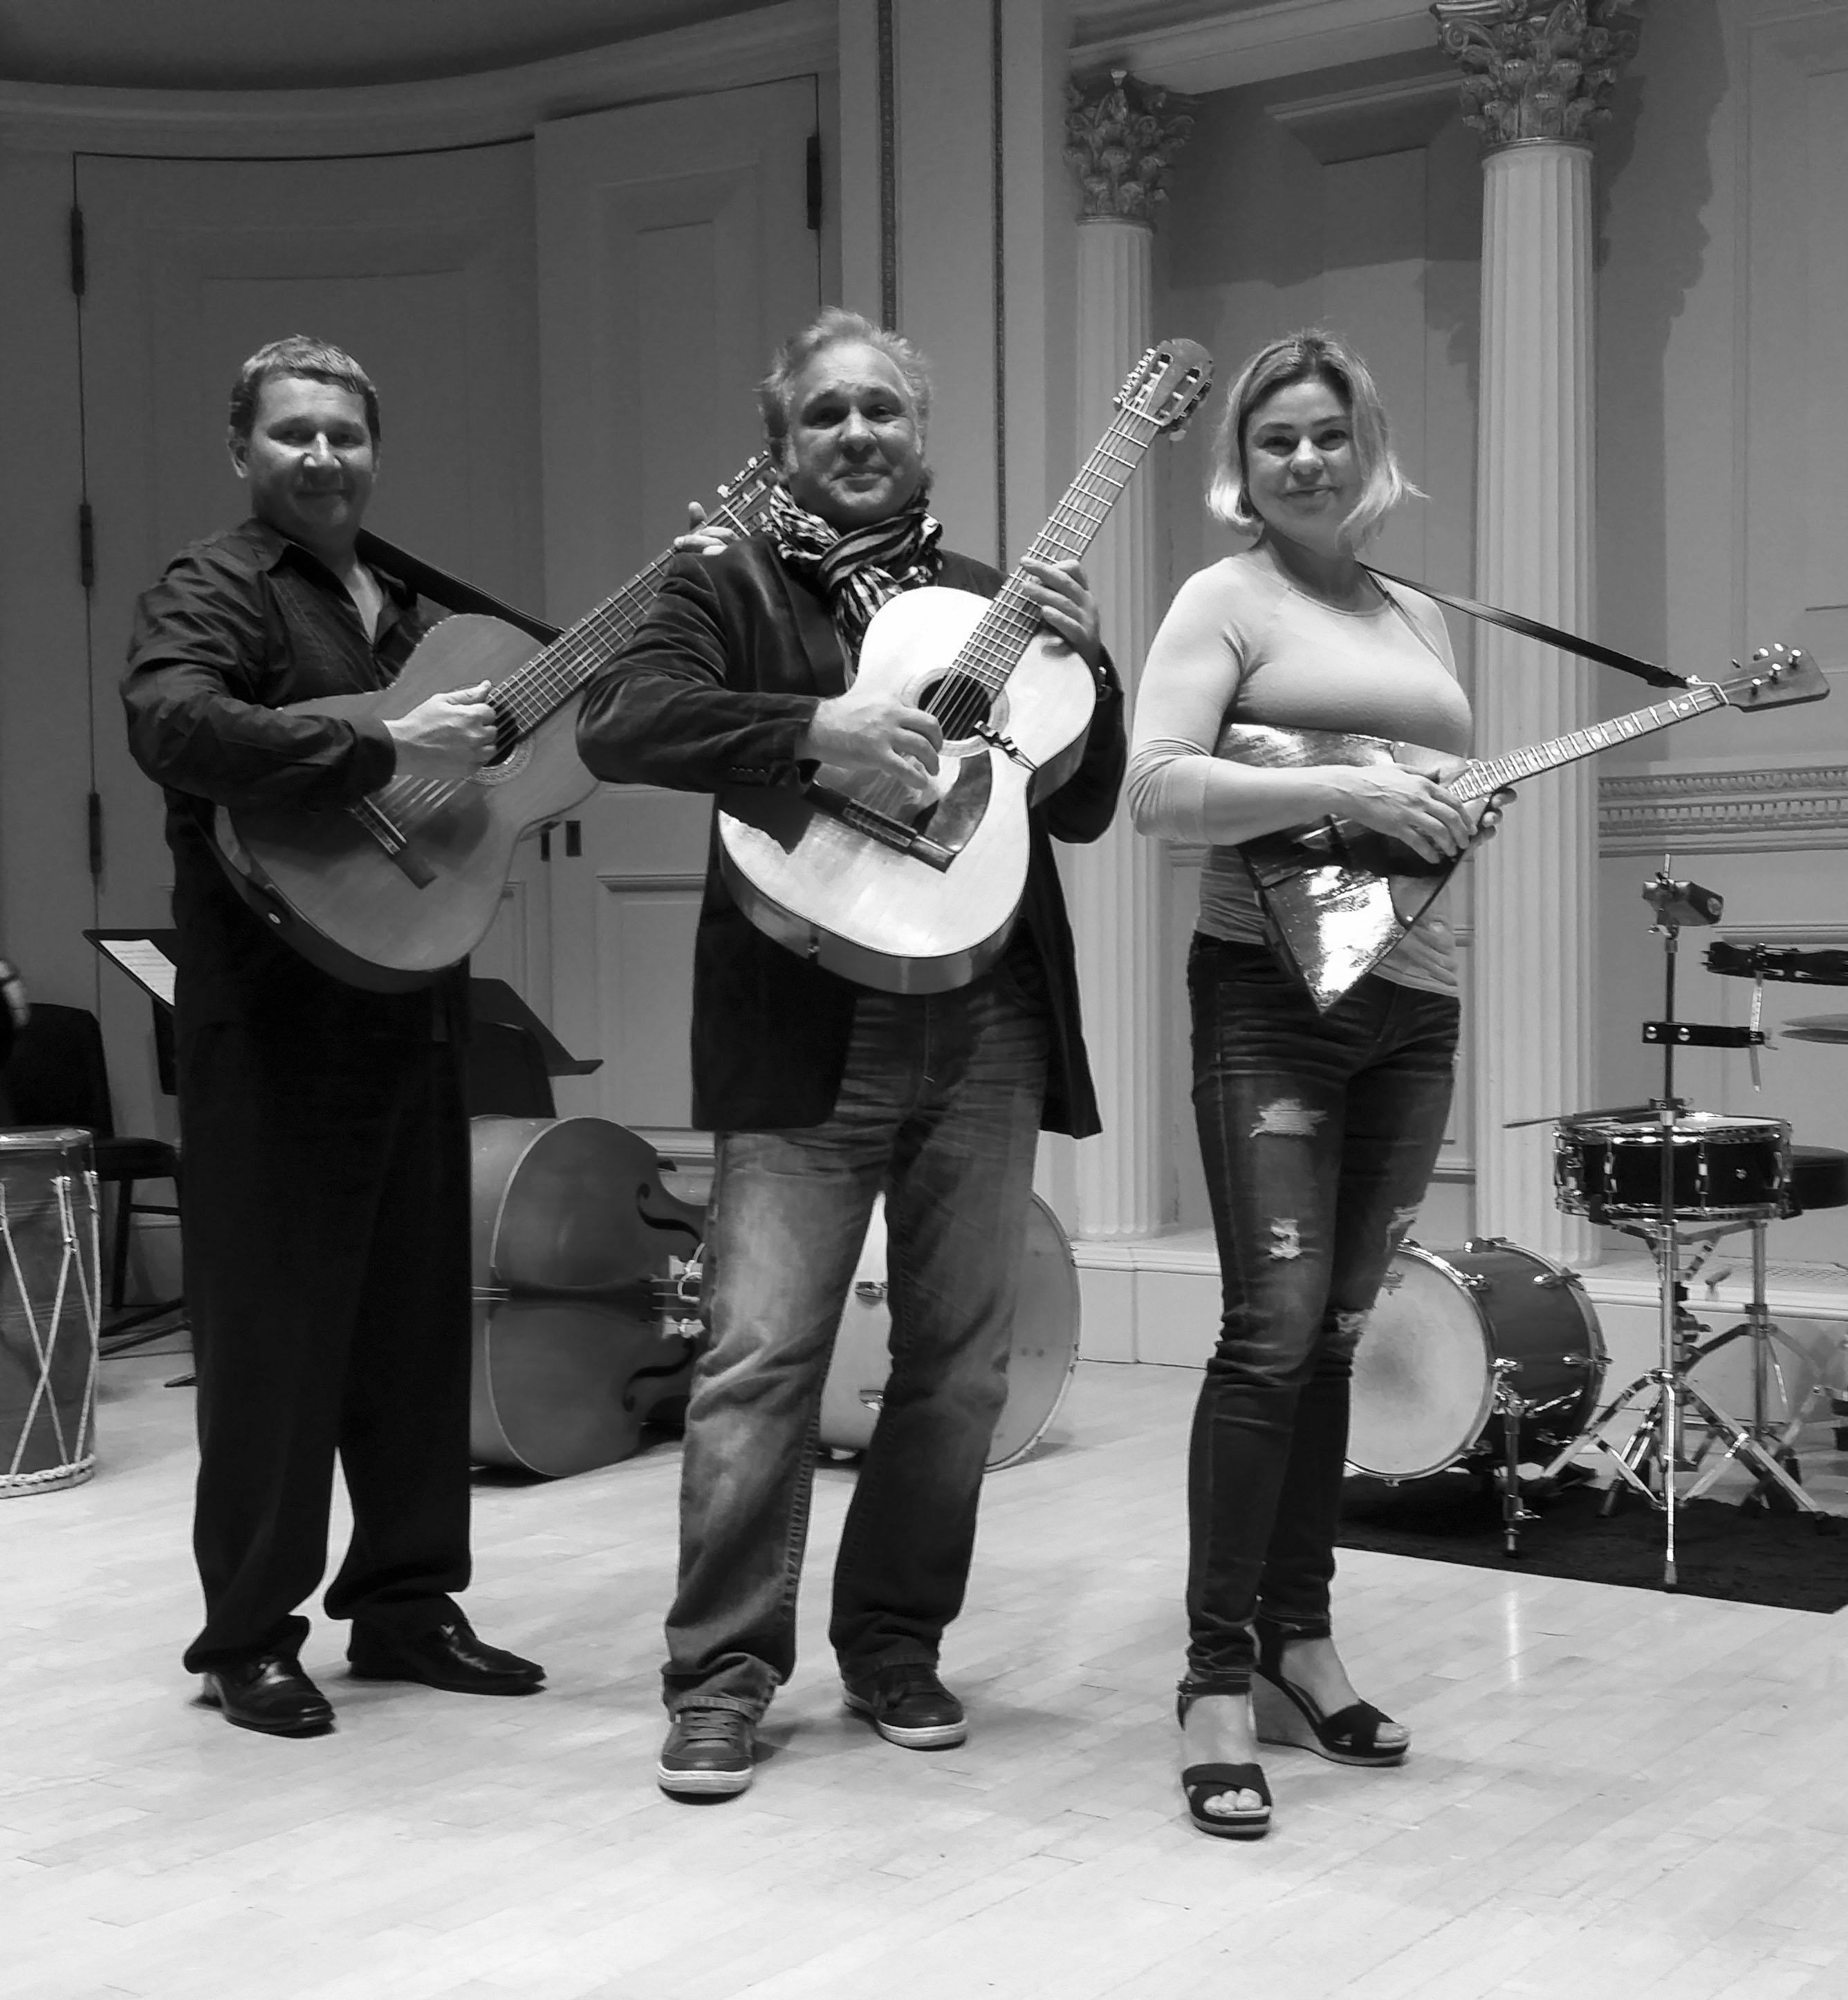 Moscow Gypsy Army, Mikhail Smirnov, Vasily Yankovich-Romani, Elina Karokhina, rehearsal at the Carnegie Hall in New York City